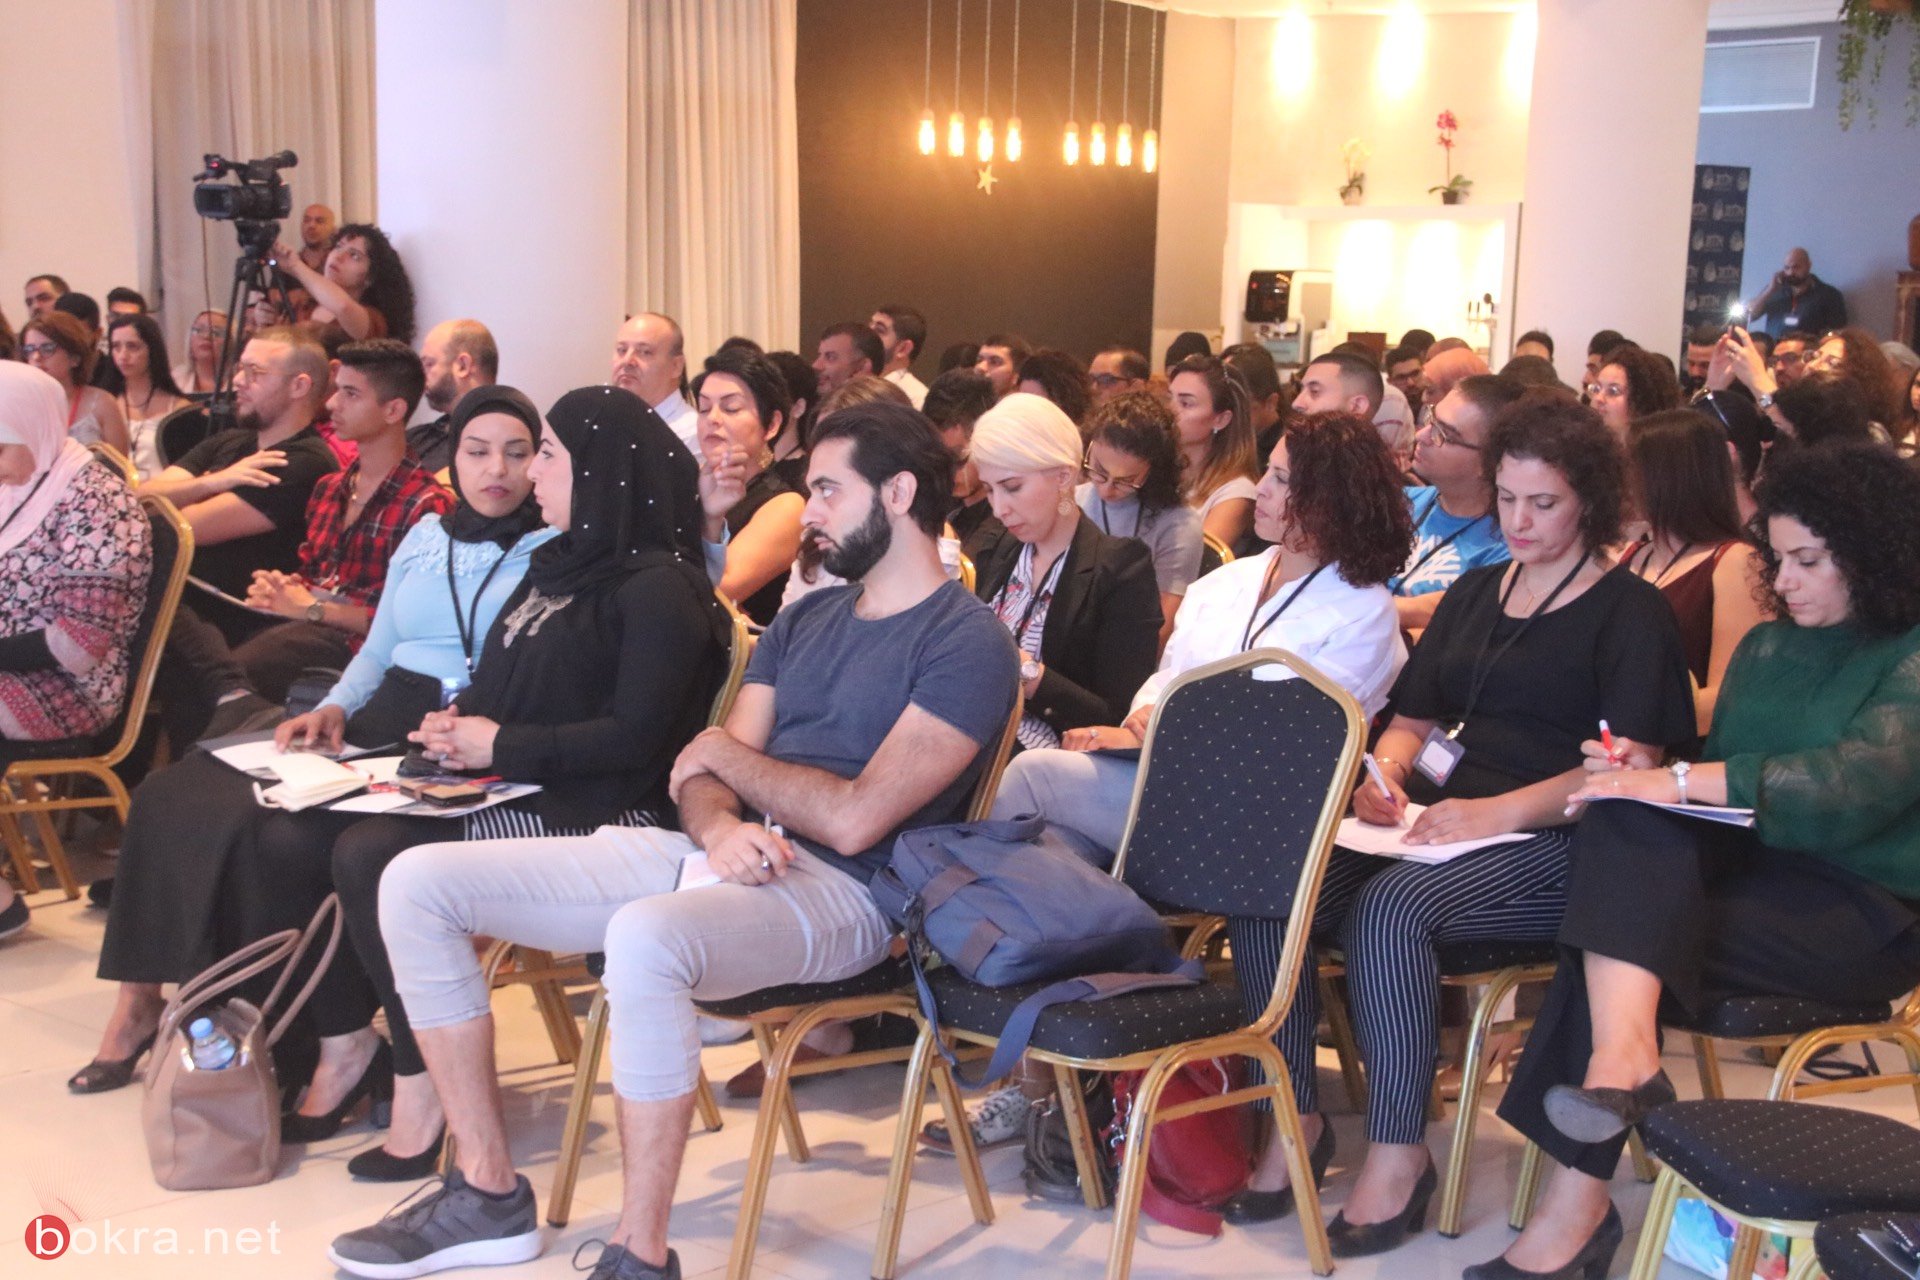 حيفا: مشاركة واسعة في مؤتمر "وصول" حول آخر التطورات في قنوات التسويق الرقمي-25